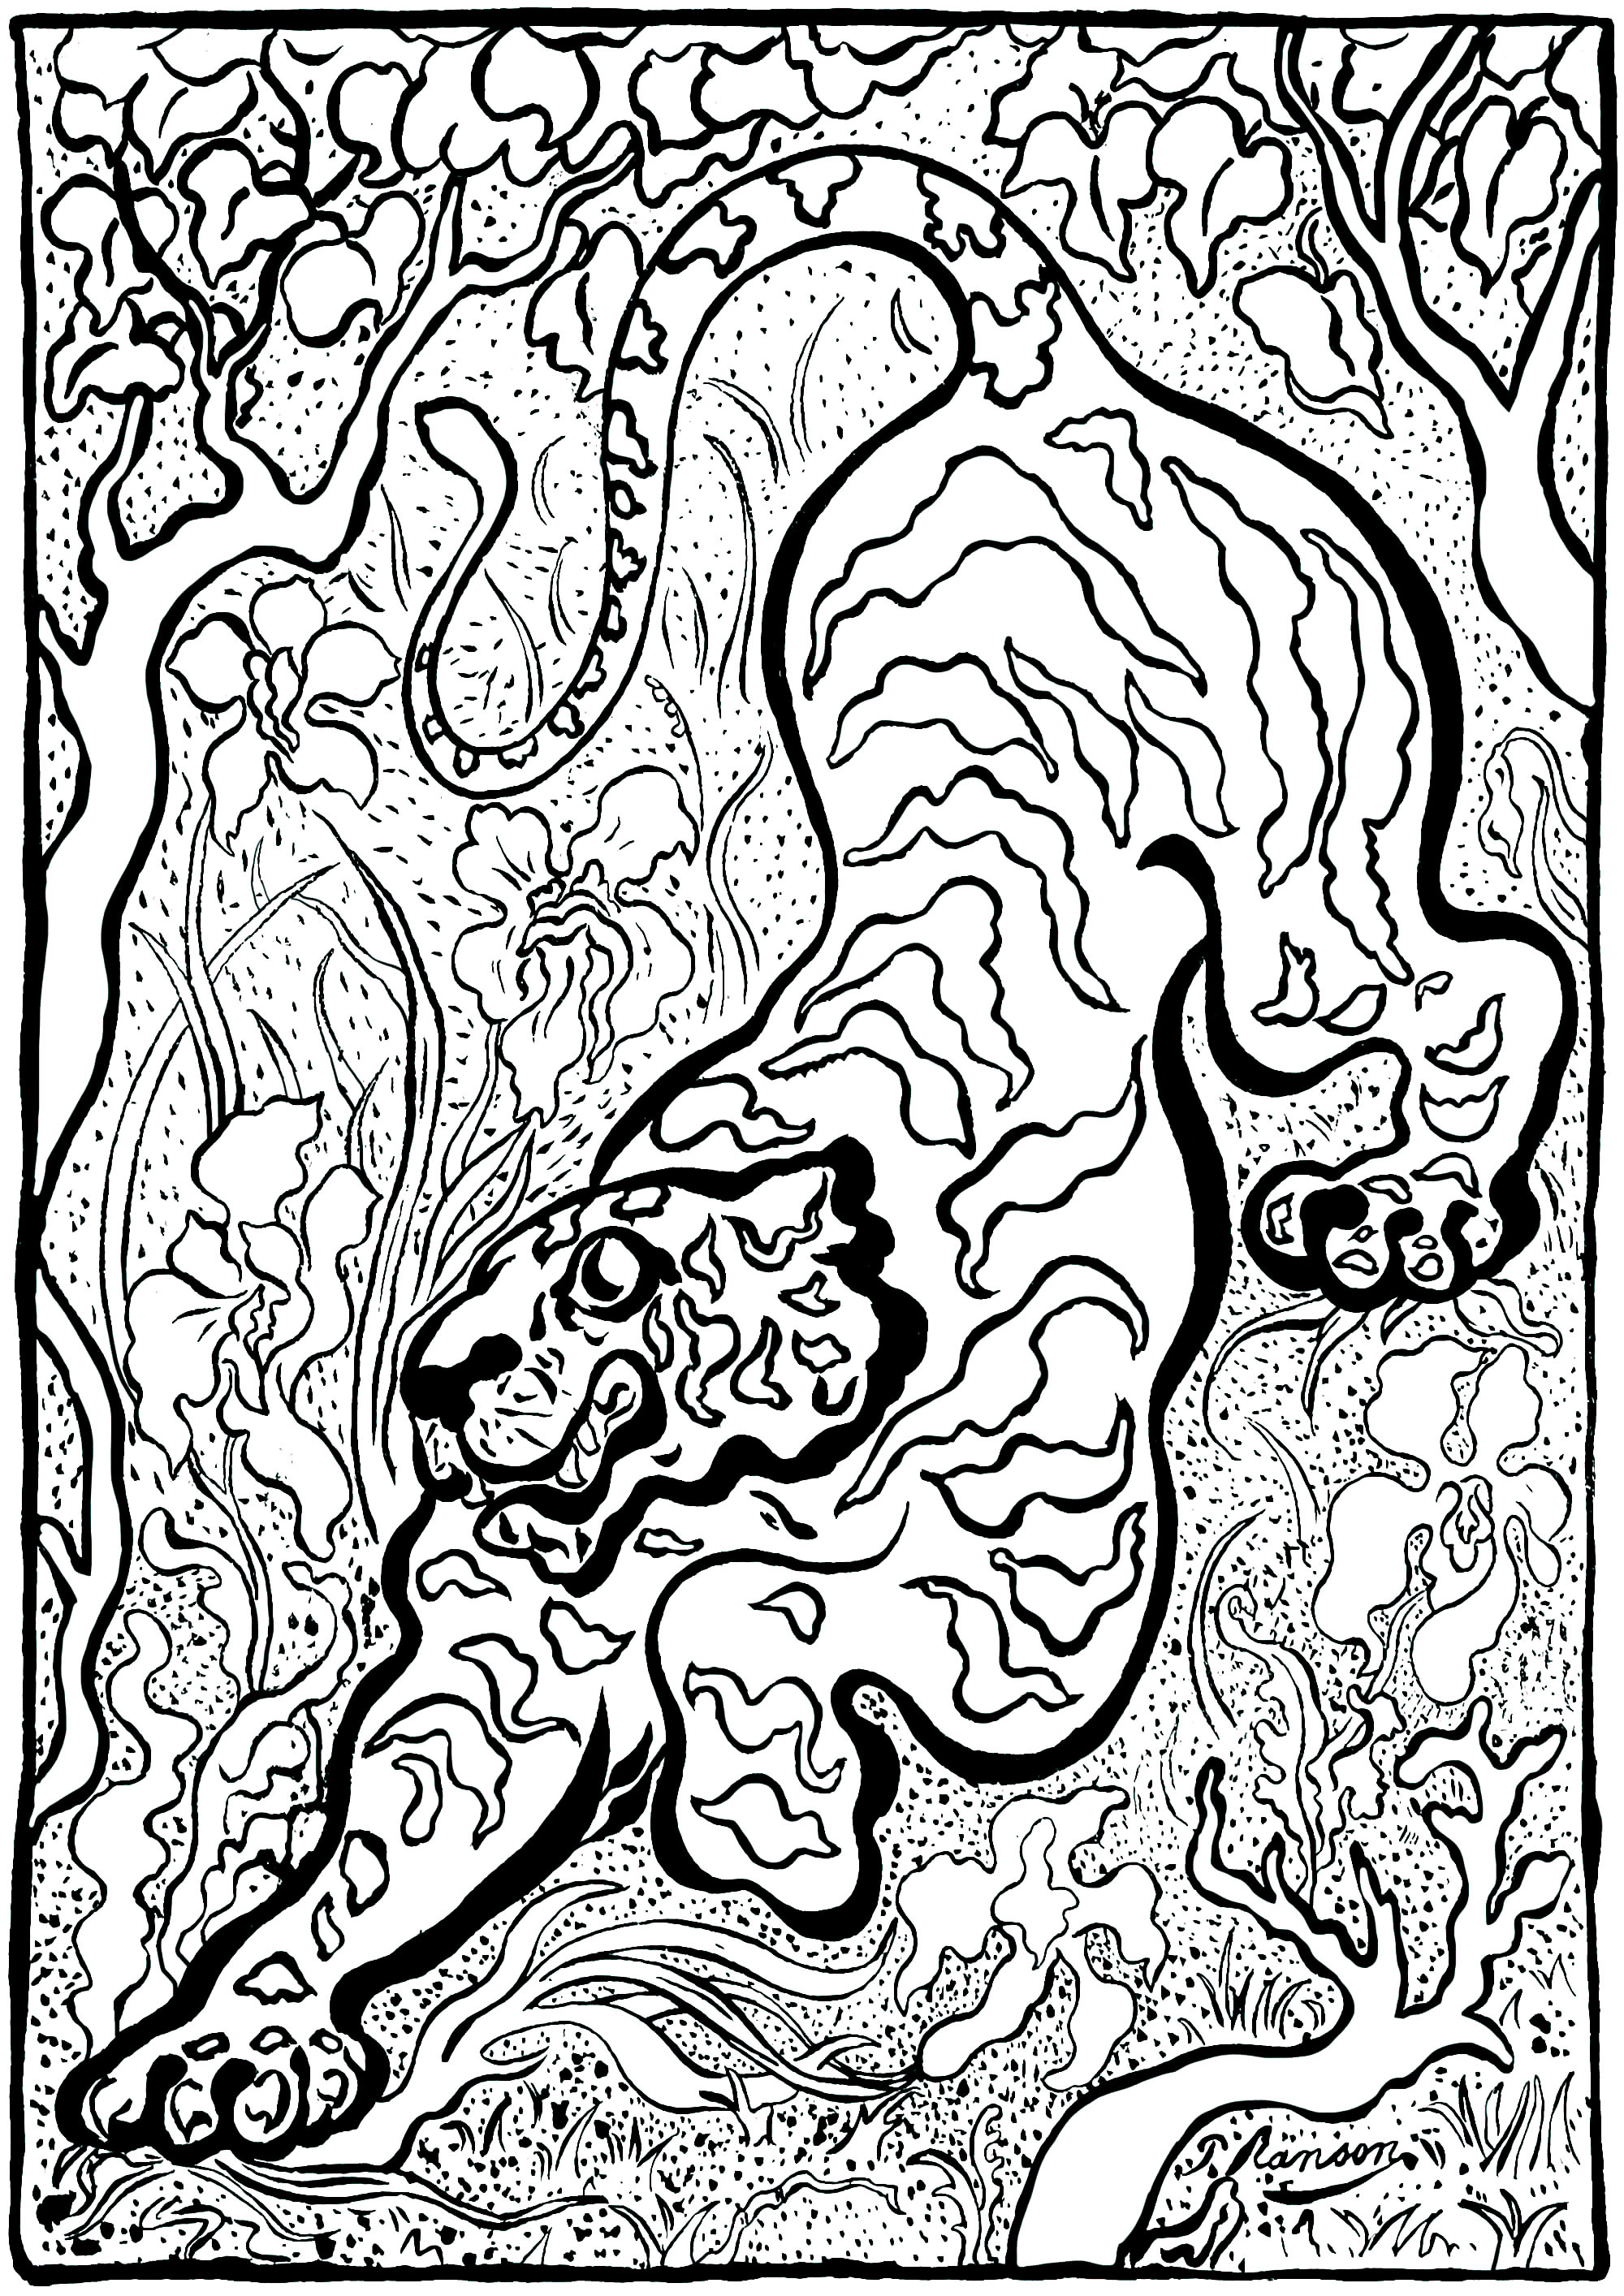 Pagina da colorare creata a partire dall'opera d'arte di Paul-Élie Ranson 'Tigre nella giungla' (1883) - Versione 1 (semplice). Paul-Élie Ranson, appartenente al gruppo 'Les Nabis', ha sviluppato uno stile originale con risonanze simboliste ed esoteriche.Inserito nella storia del post-impressionismo ma in rottura con l'impressionismo, il movimento nabi sostiene un ritorno all'immaginazione e alla soggettività.